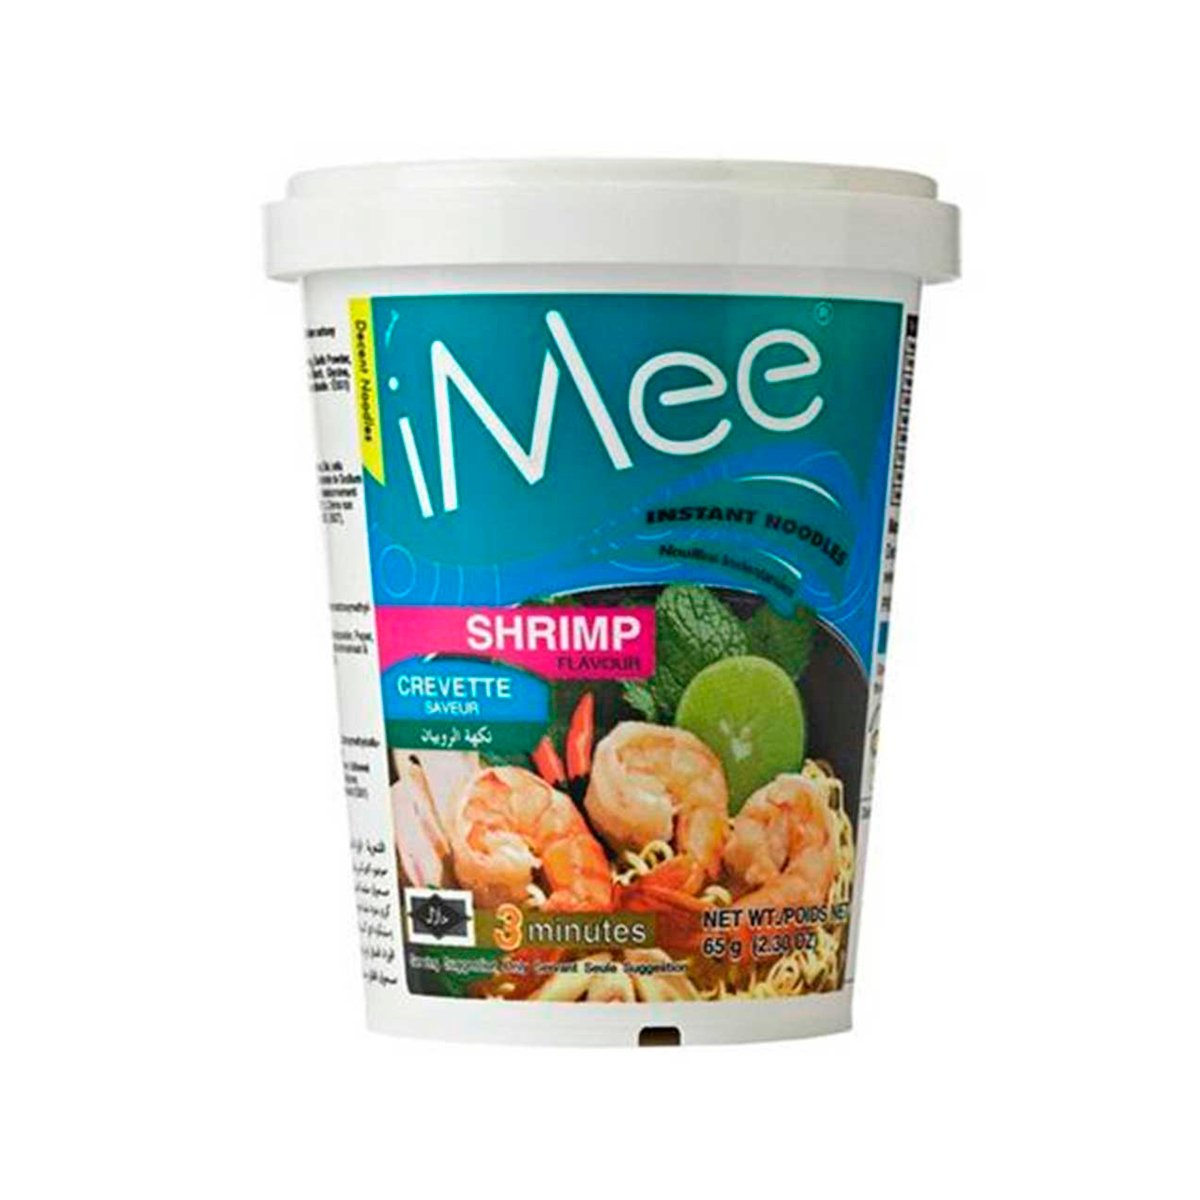 I Mee Cup Noodles Shrimp 65g